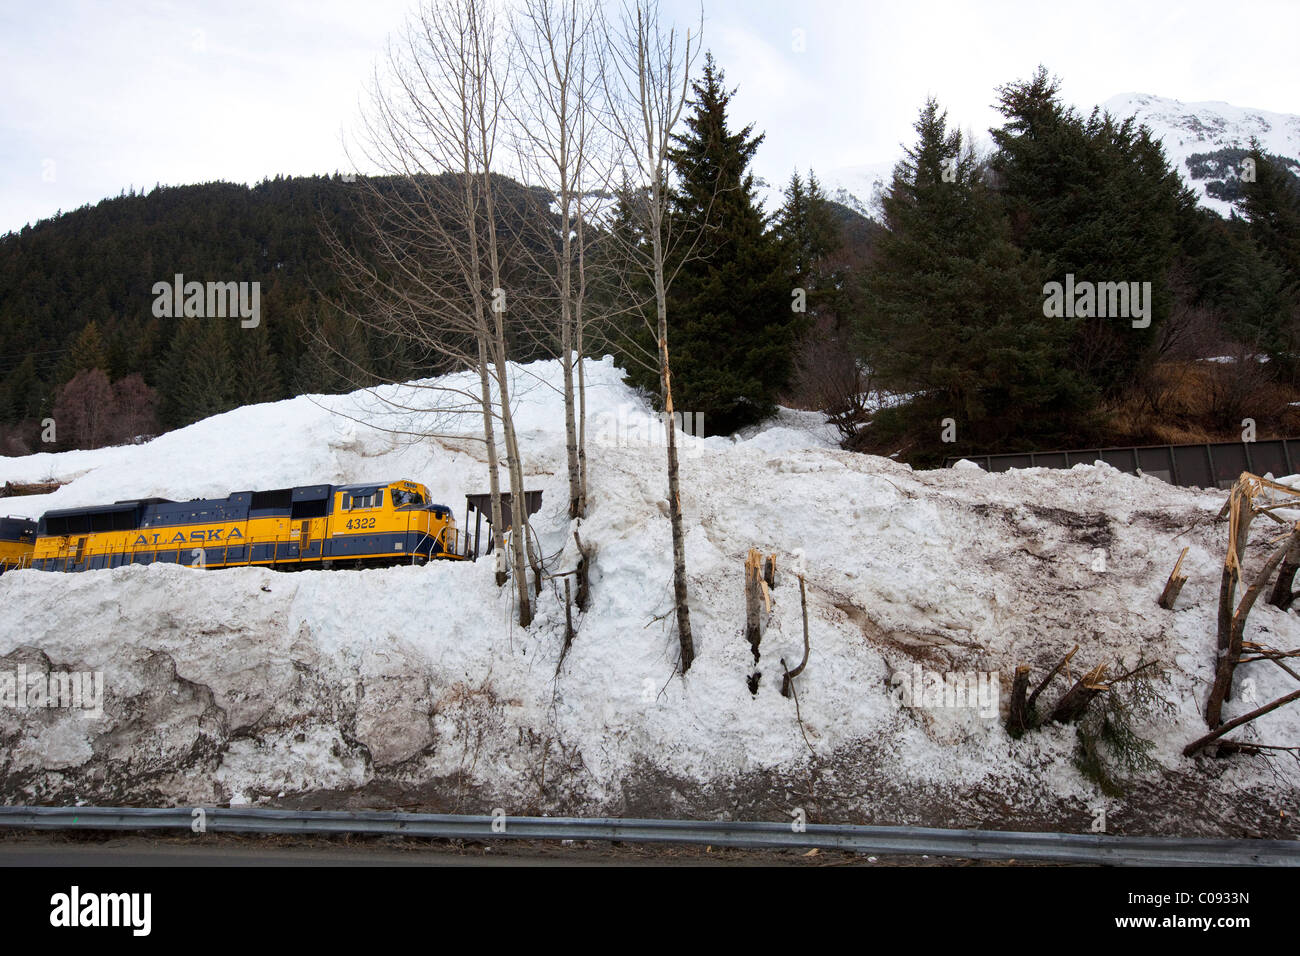 Un Alaska Railroad treno passa attraverso una zona che è stata recentemente colpita da una valanga, centromeridionale Alaska, inverno Foto Stock